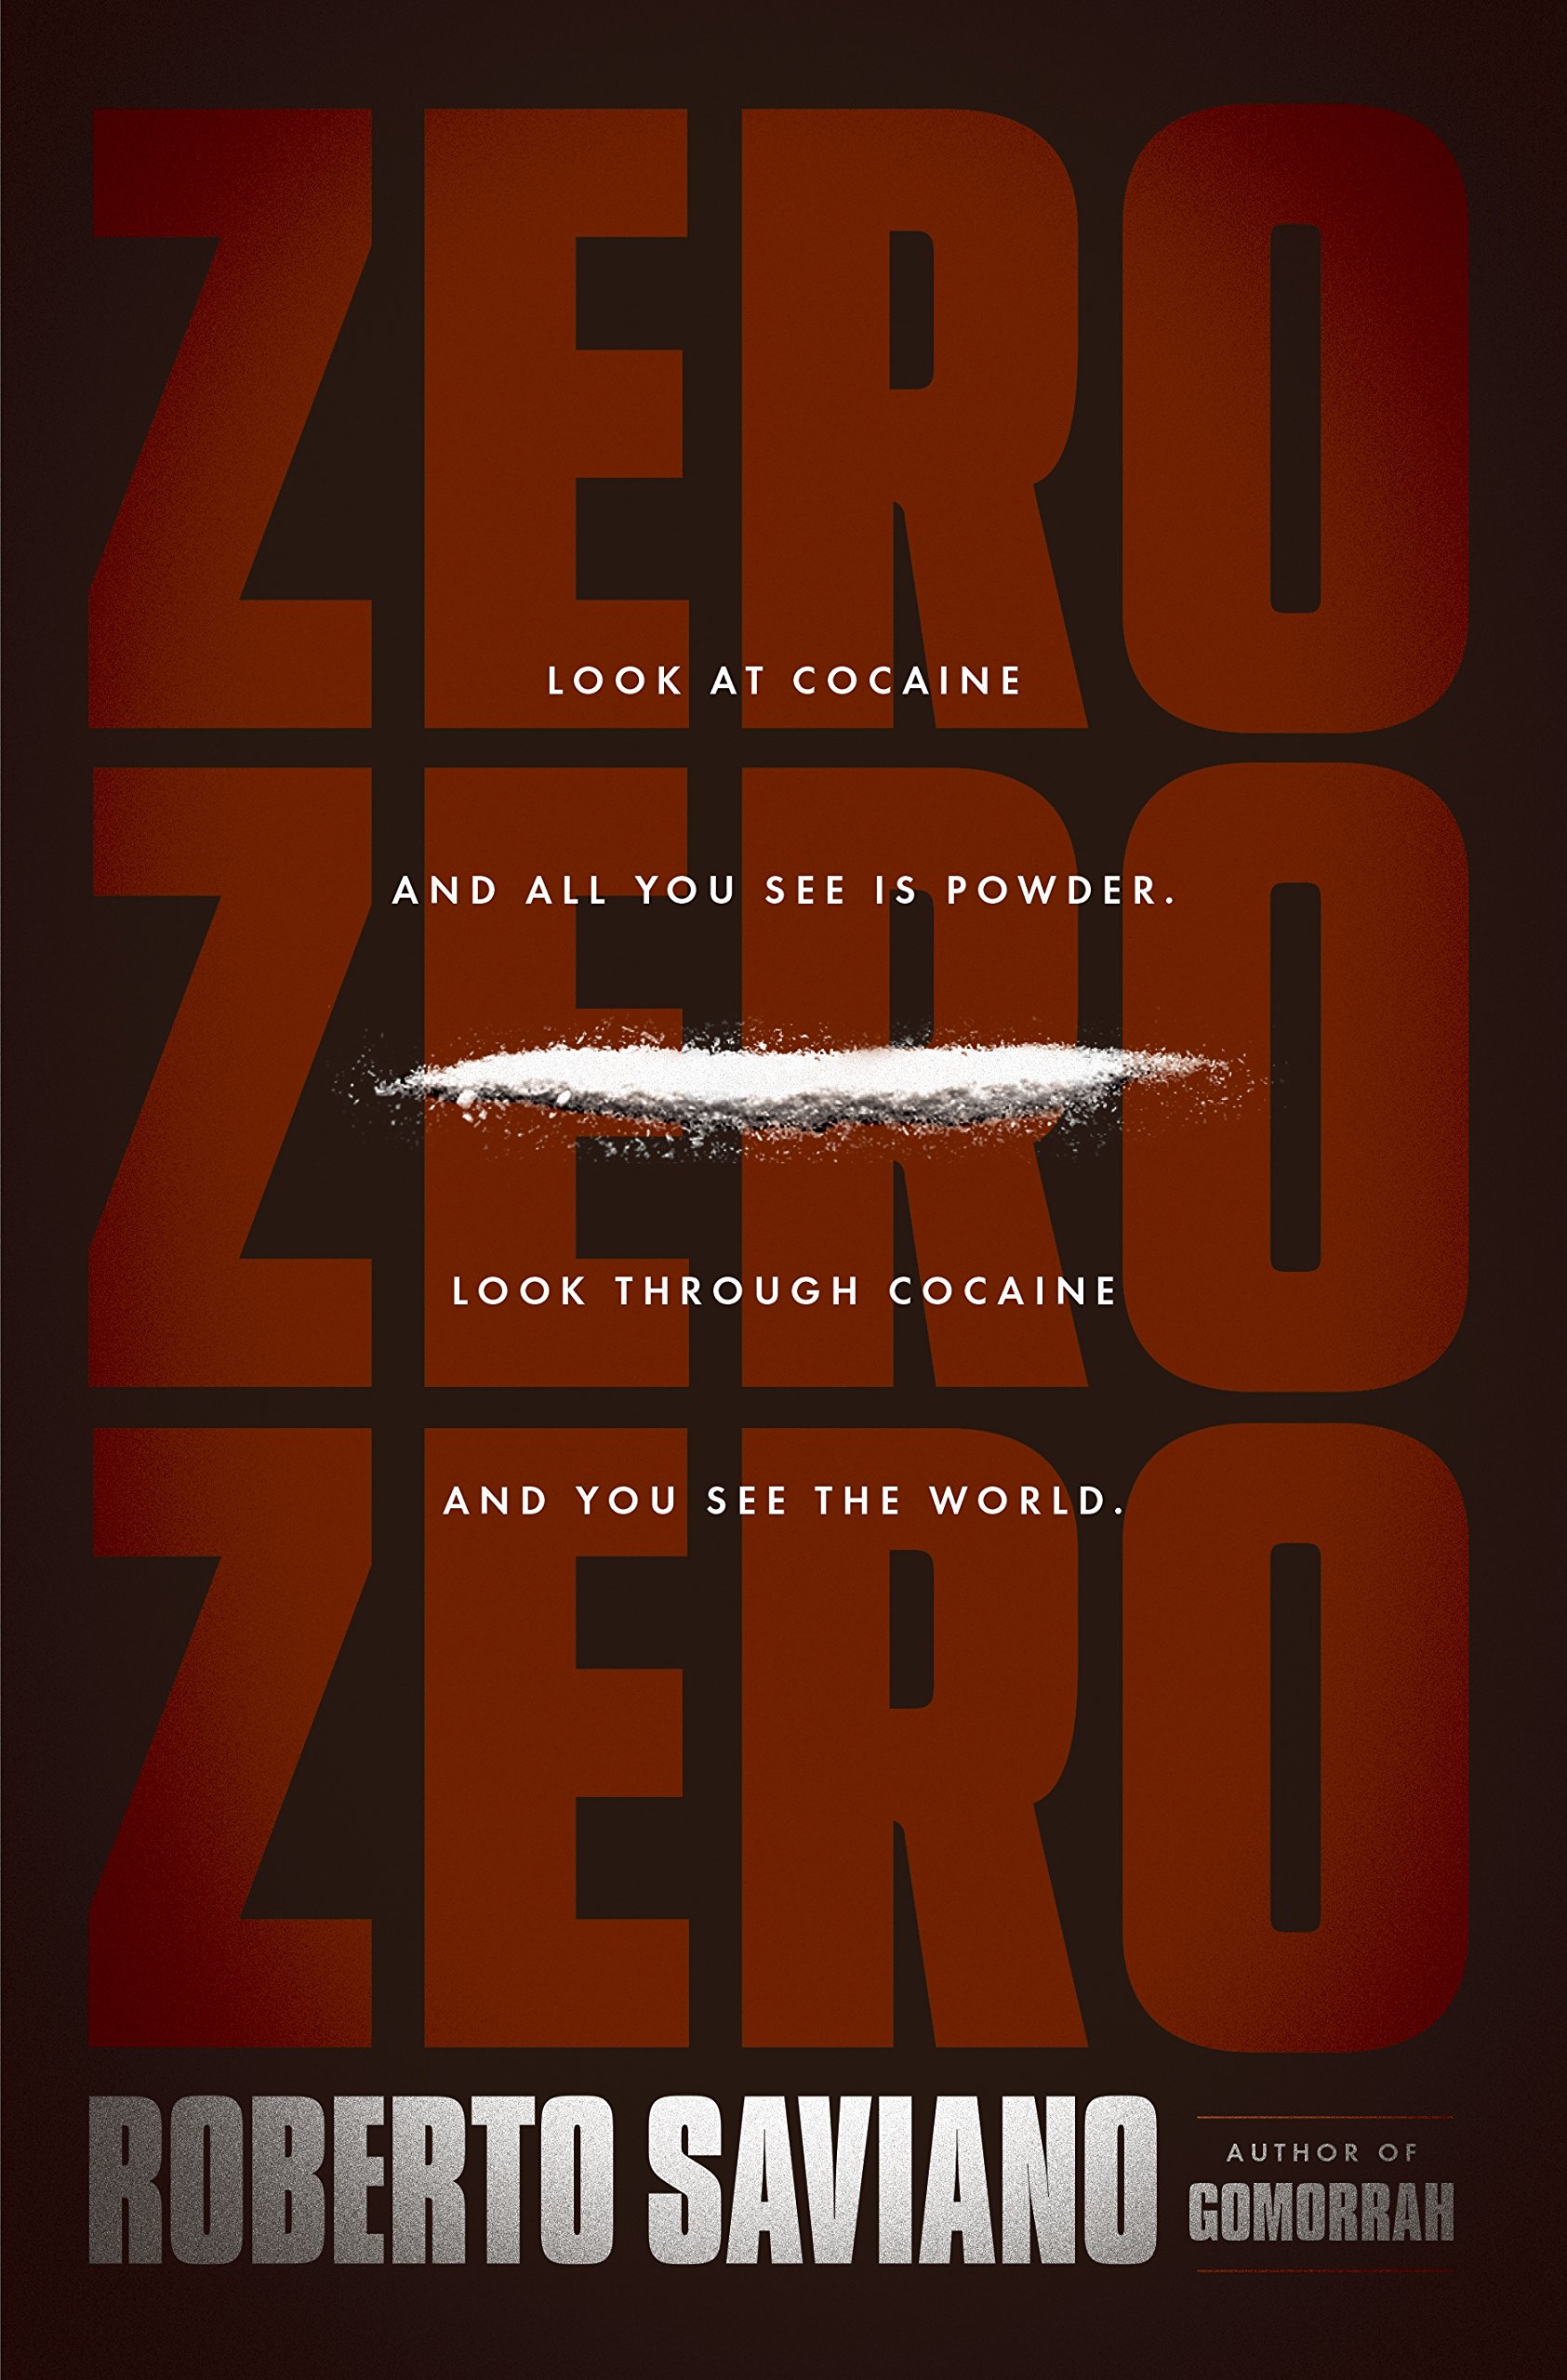 ZERO ZERO ZERO: ¡El estreno en español de la nueva GOMORRA, en Amazon Prime Video (España y Latinoamérica)!